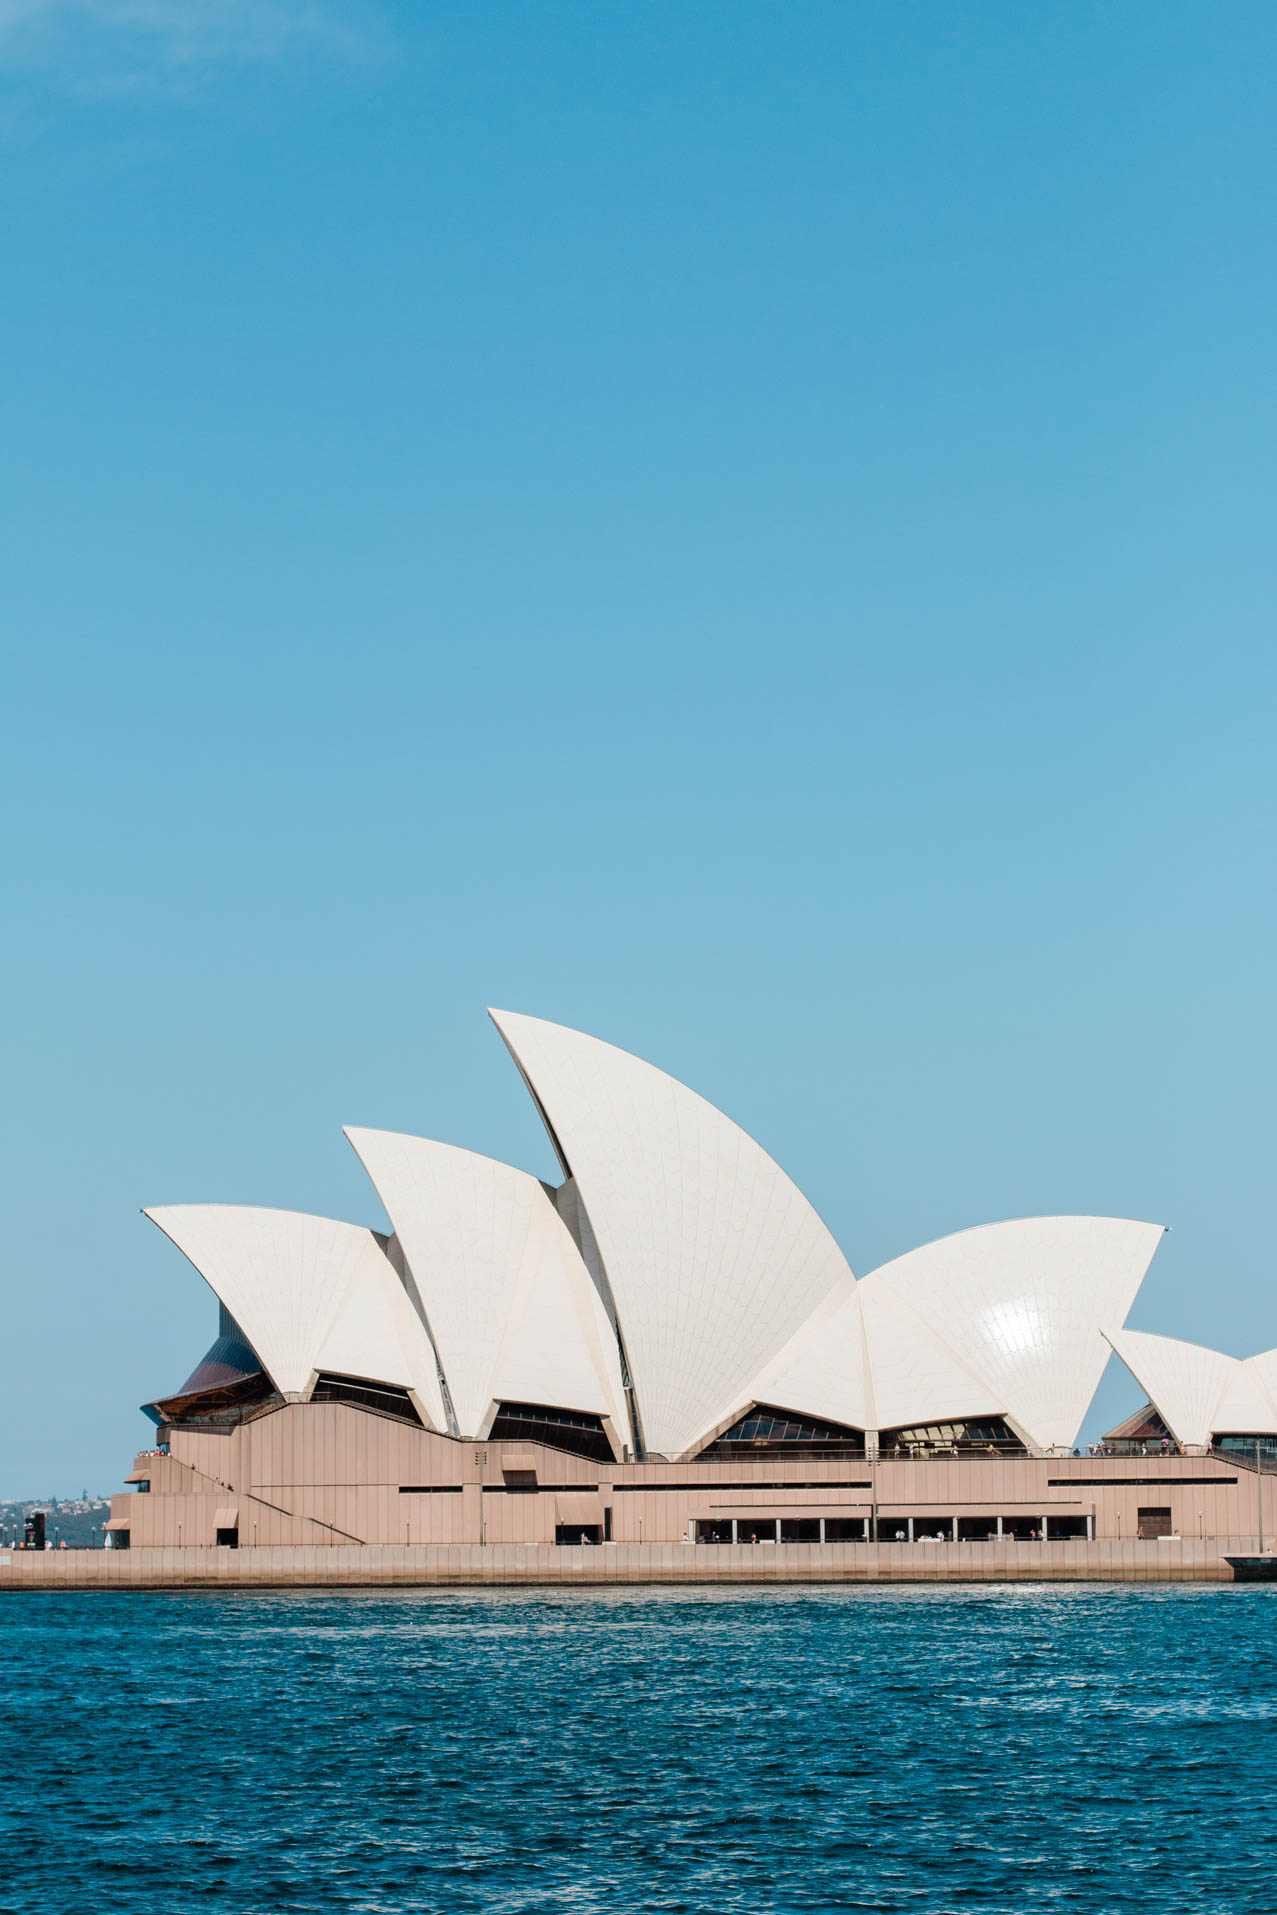 Elternzeit Reise Australien - Reisebericht Sydney